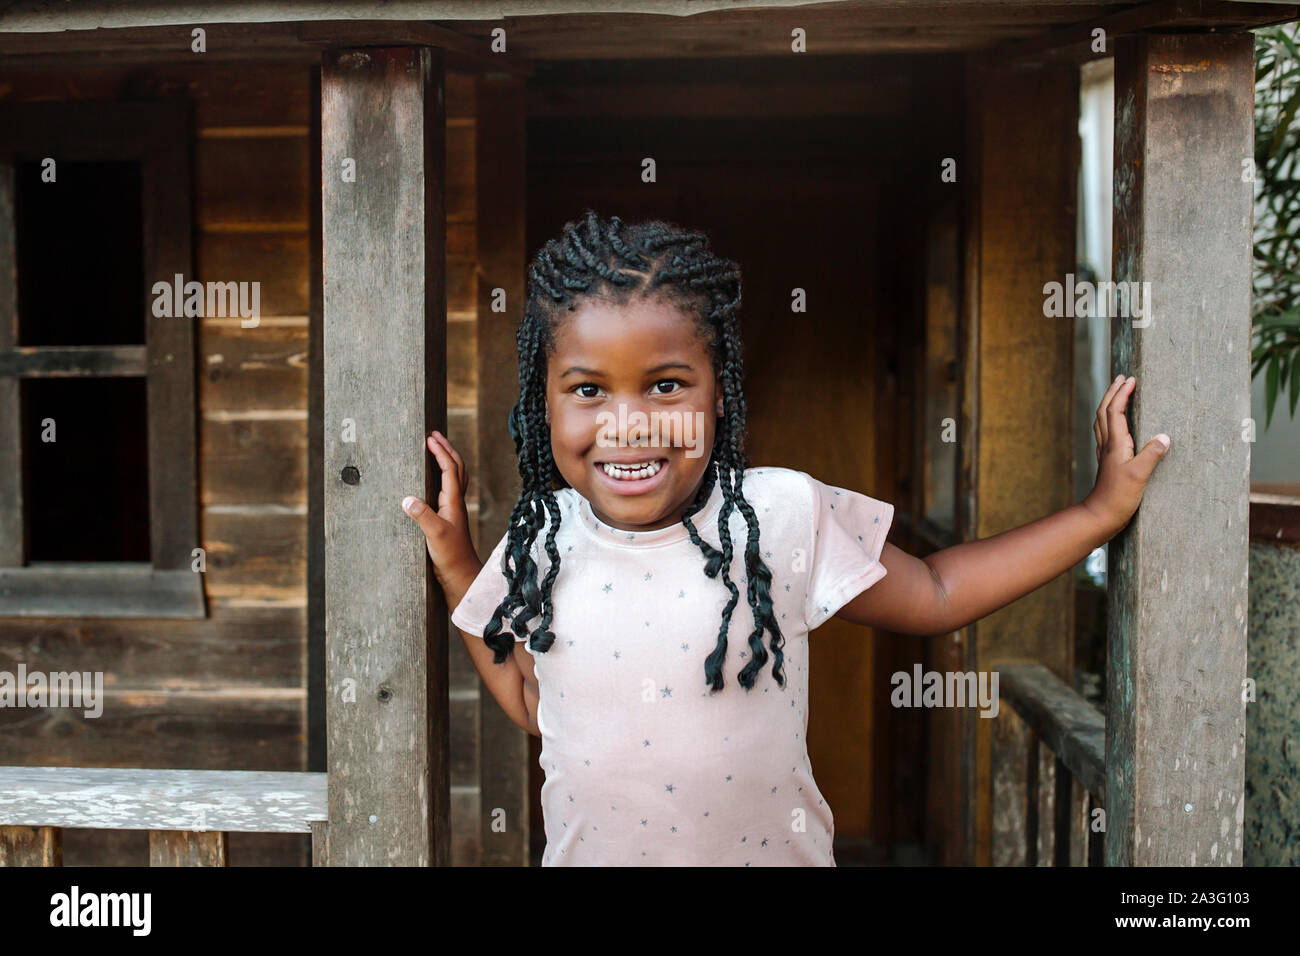 Young smiling black girl with braids sur portique de bois chalet Banque D'Images